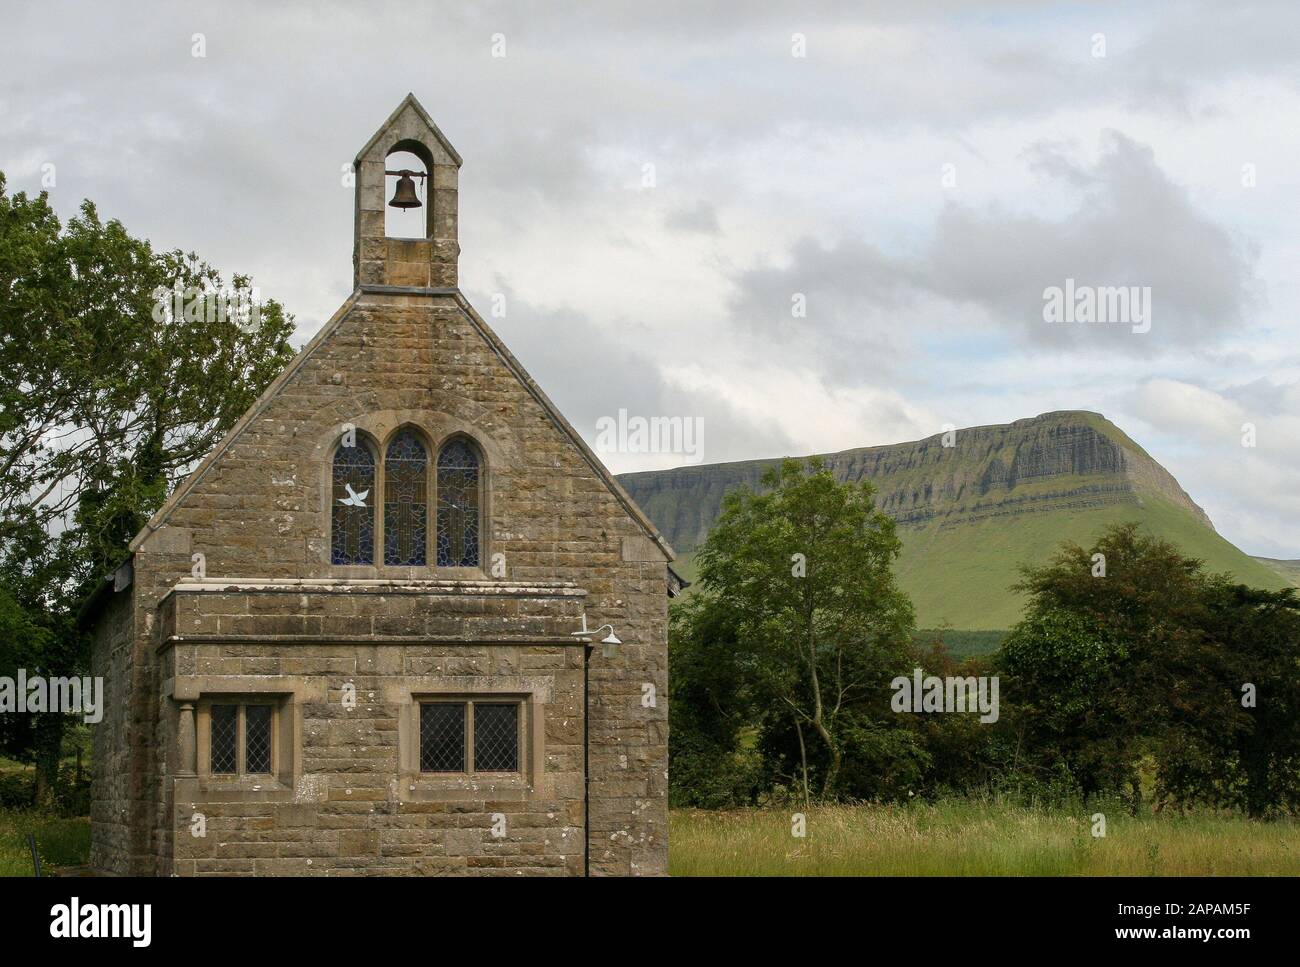 Ländliche Pfarrkirche mit einer Glocke in Irland vor einem Berg. St. Kevin's Munninane ist eine Gemeinde der irischen Pfarrei neben Benbulben im County Sligo. Stockfoto